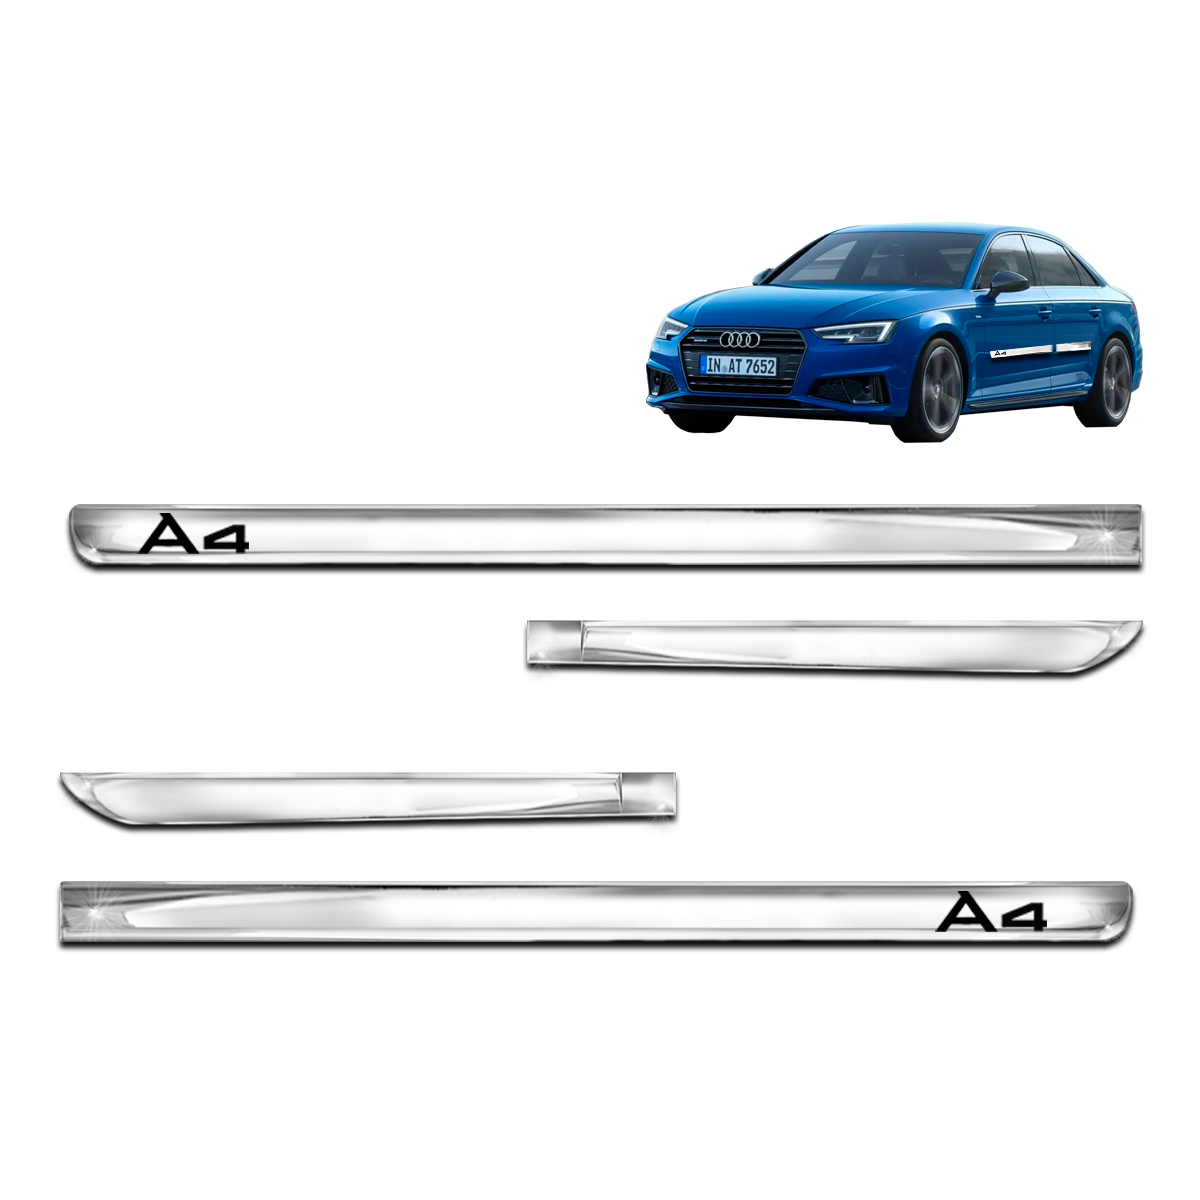 Kit X-treme de Friso Cromado Lateral Audi A4 4 Portas